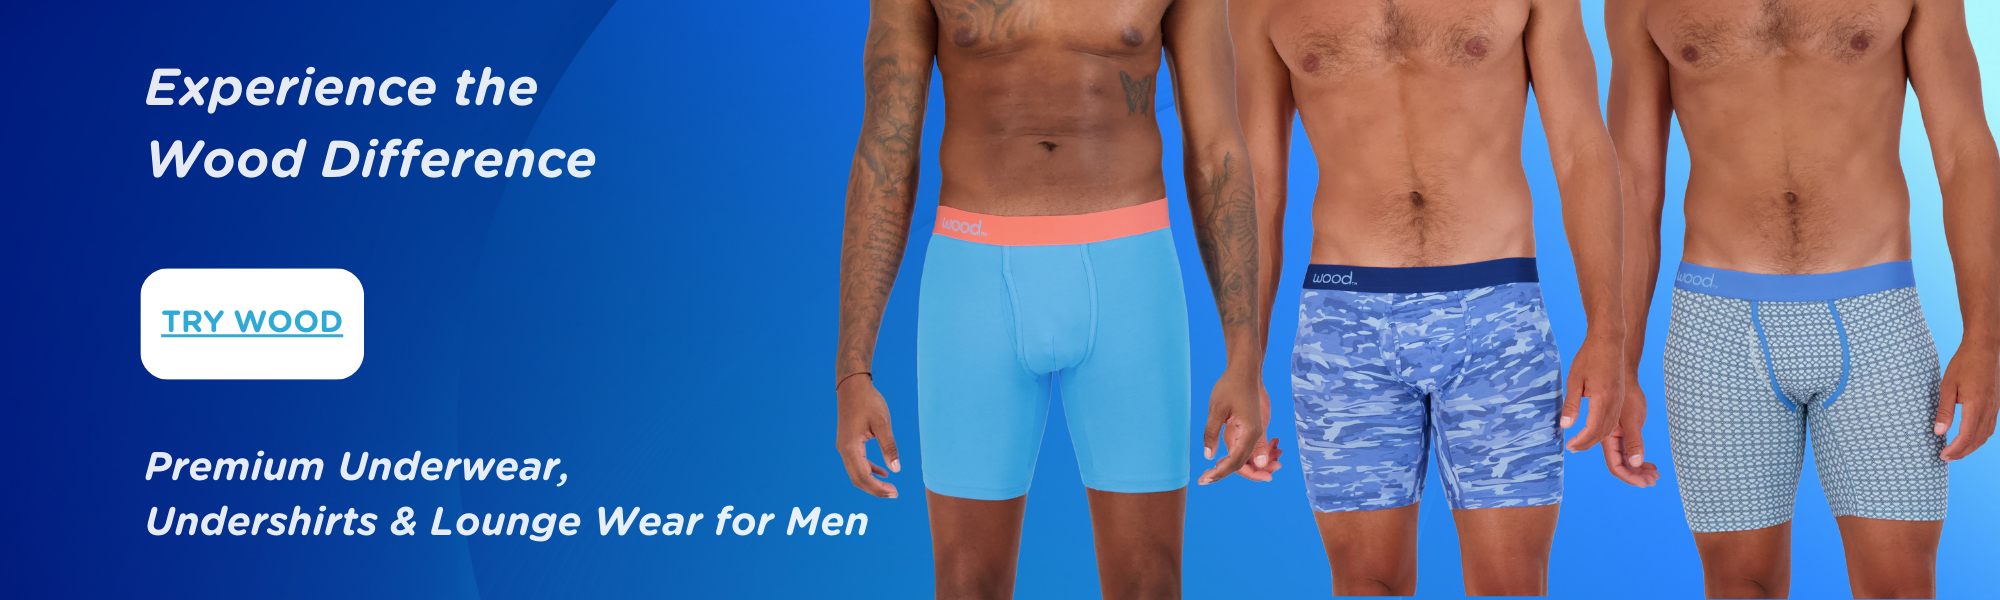 Buy Mens Underwear at Online Store in 20% OFF | Wood Underwear